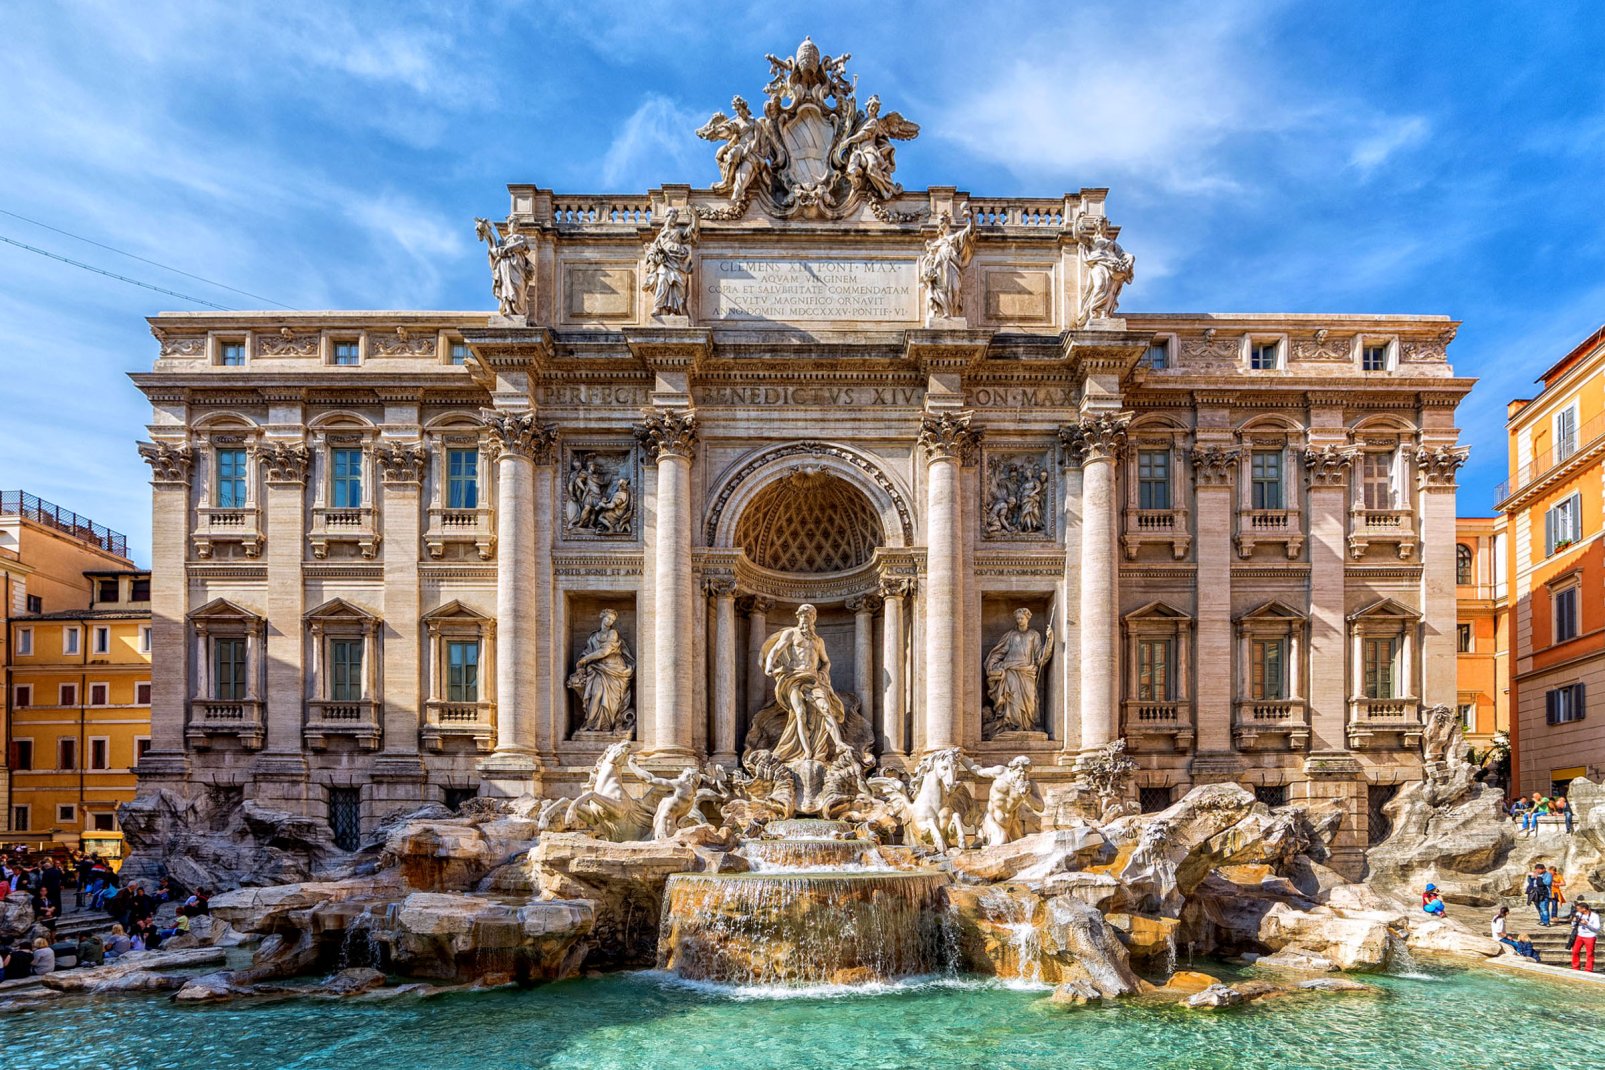 Ce palais connu mondialement pour sa célèbre fontaine fut de tous temps la propriété de l'aristocratie romaine, jusqu'en 1978 où l'Etat italien en fit l'acquisition.